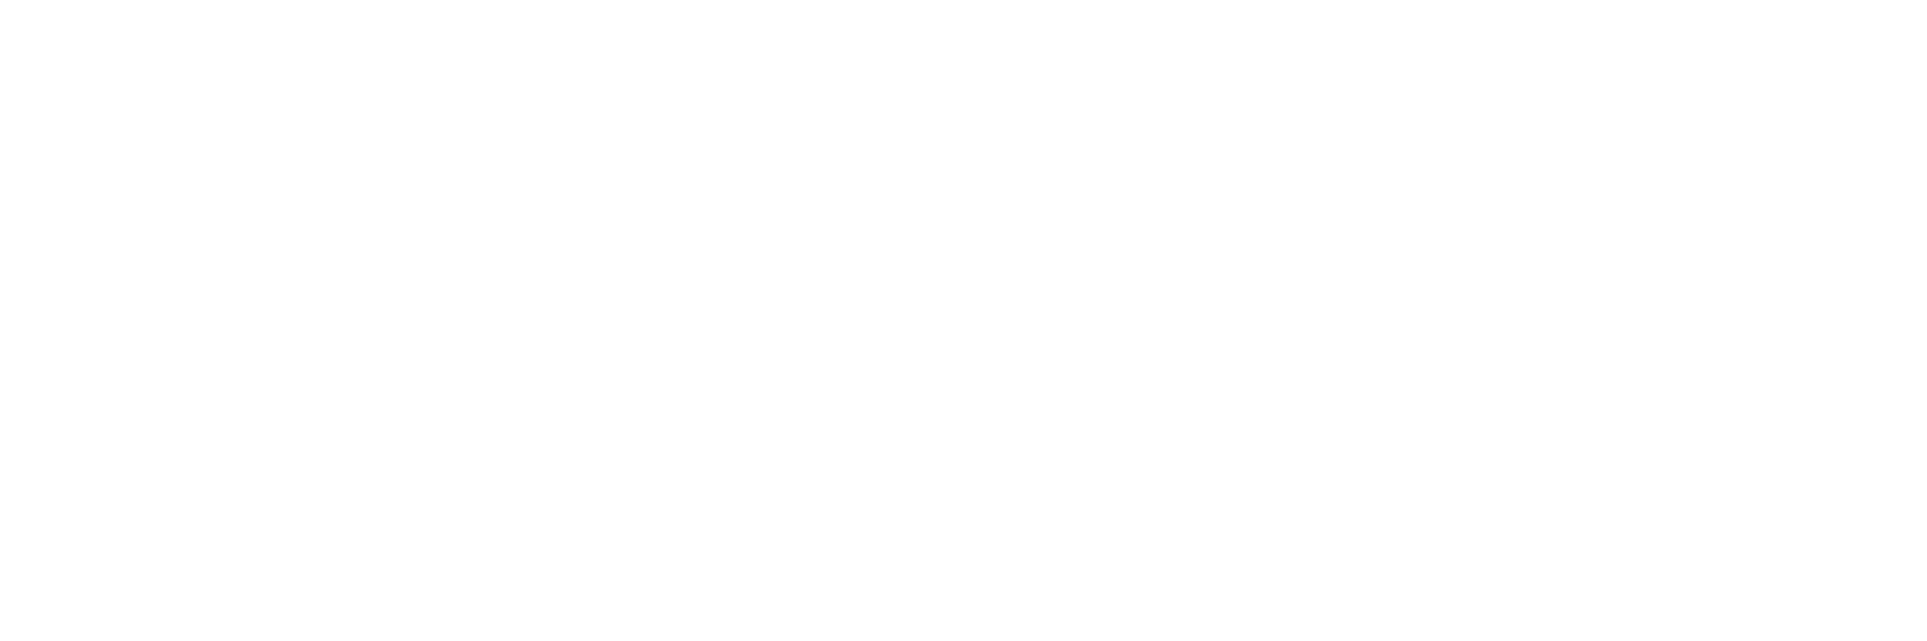 The Nail Master Shop